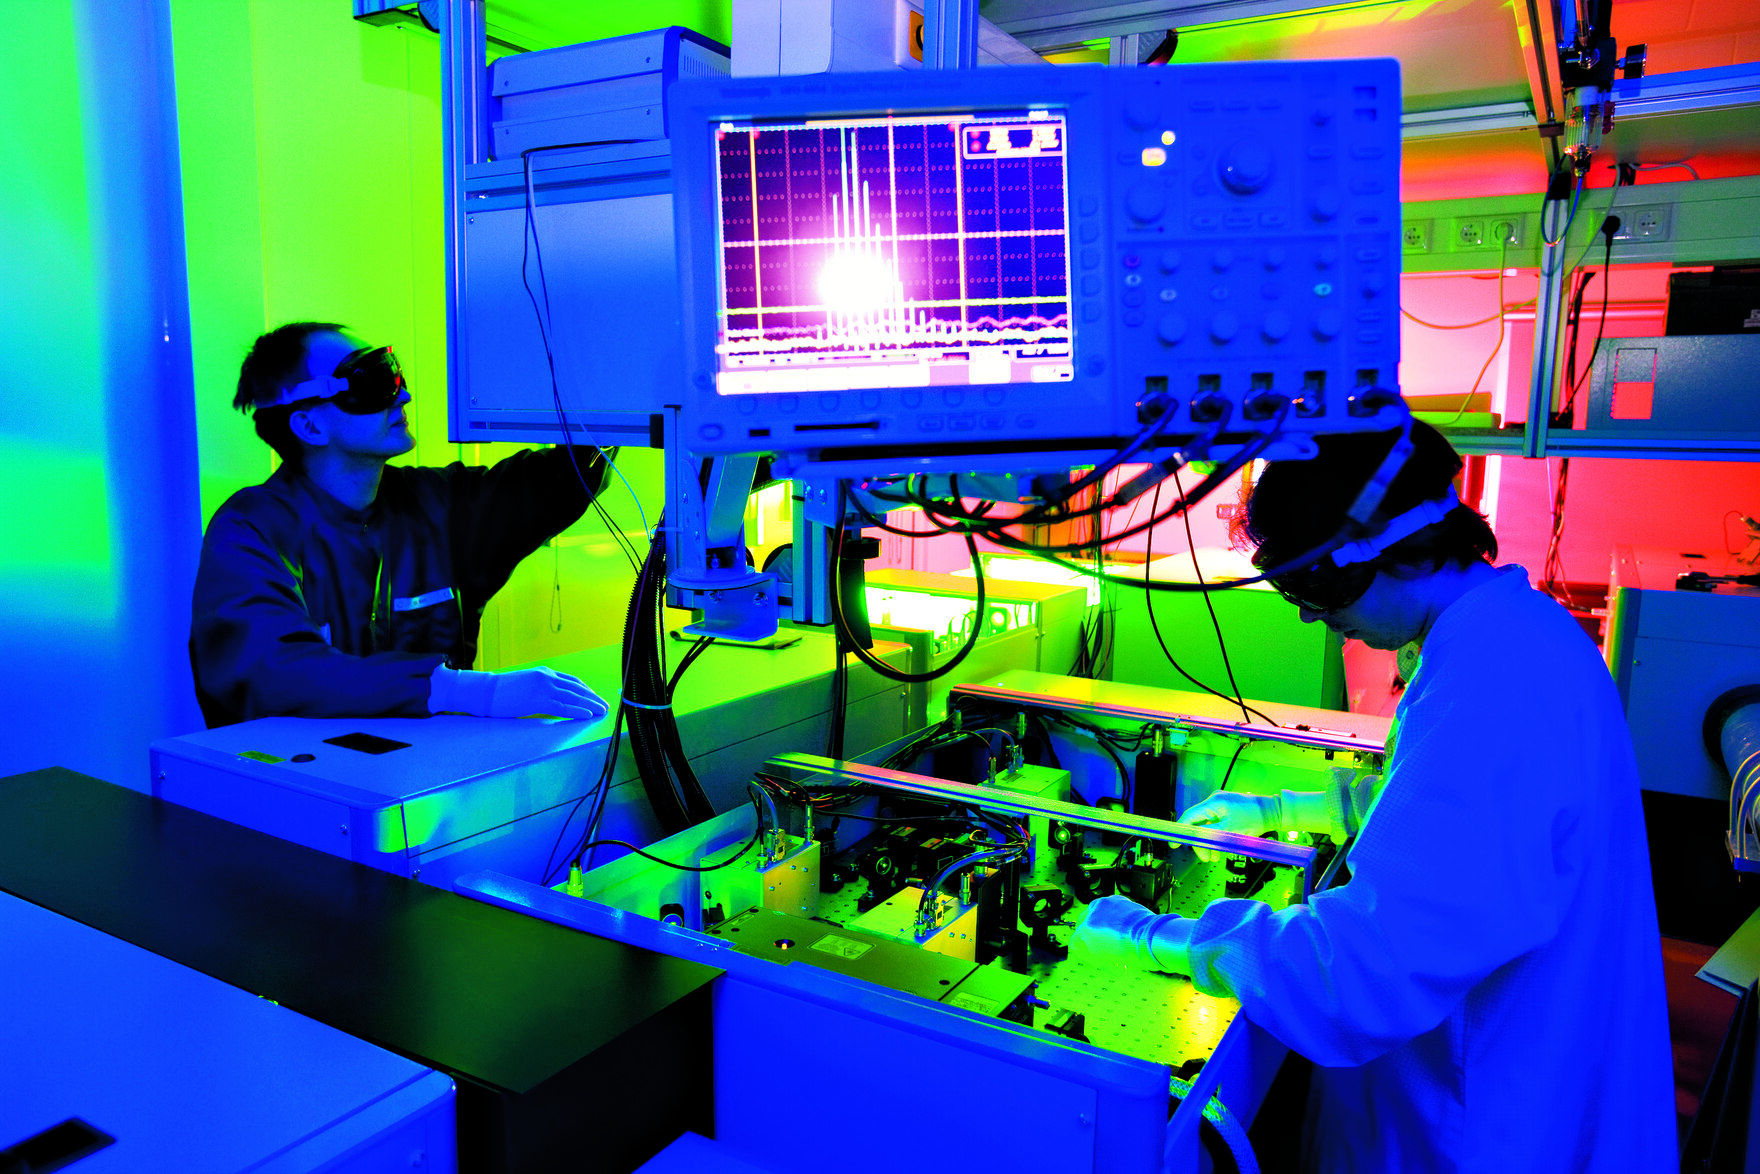  Dresdner Physiker arbeiten am Helmholtz-Zentrum Dresden-Rossendorf an Beschleunigern für die Krebstheraphie mit Protonen.